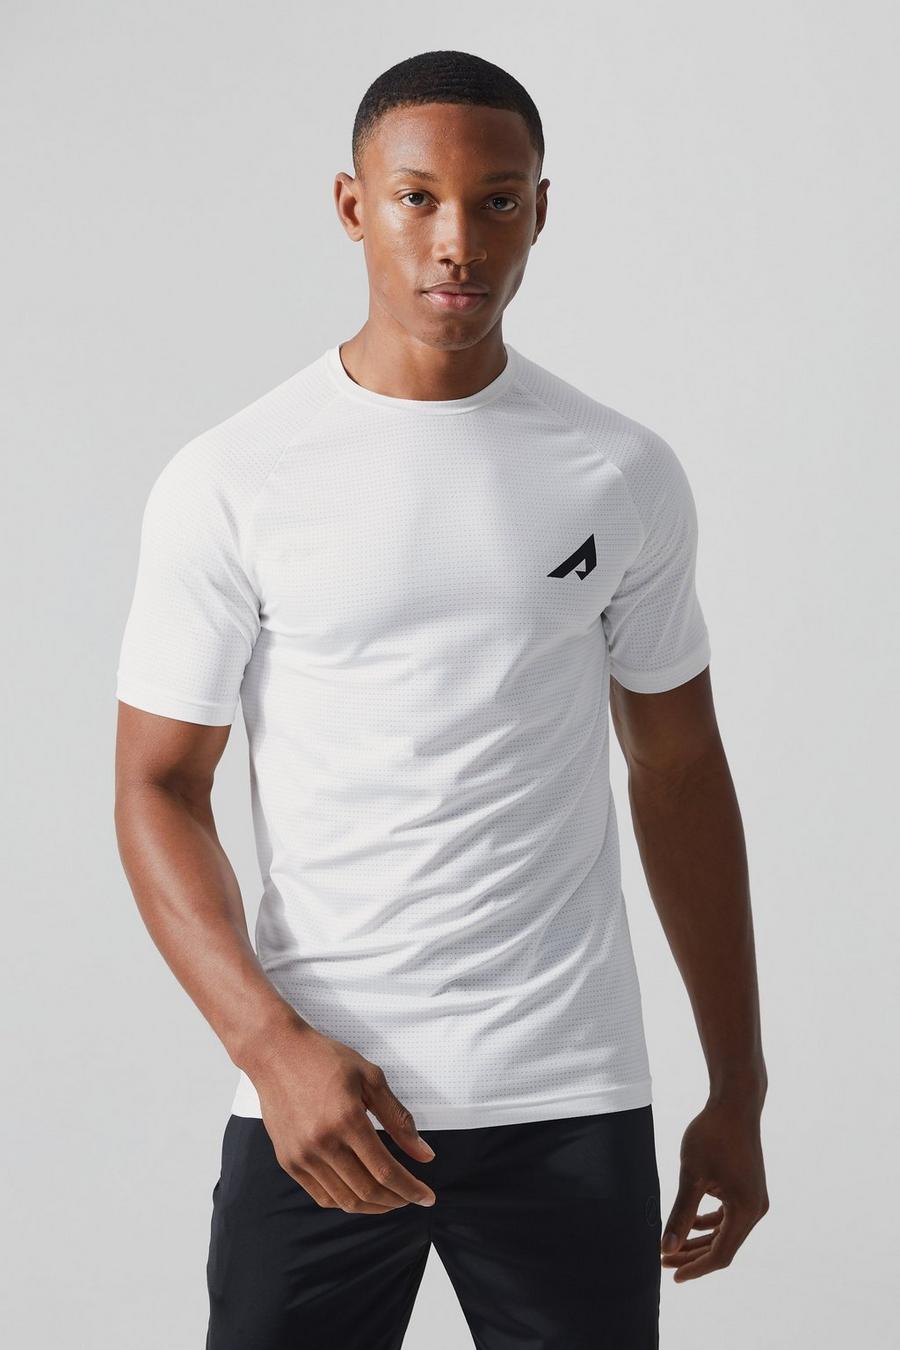 Camiseta Active resistente de malla ajustada al músculo, White